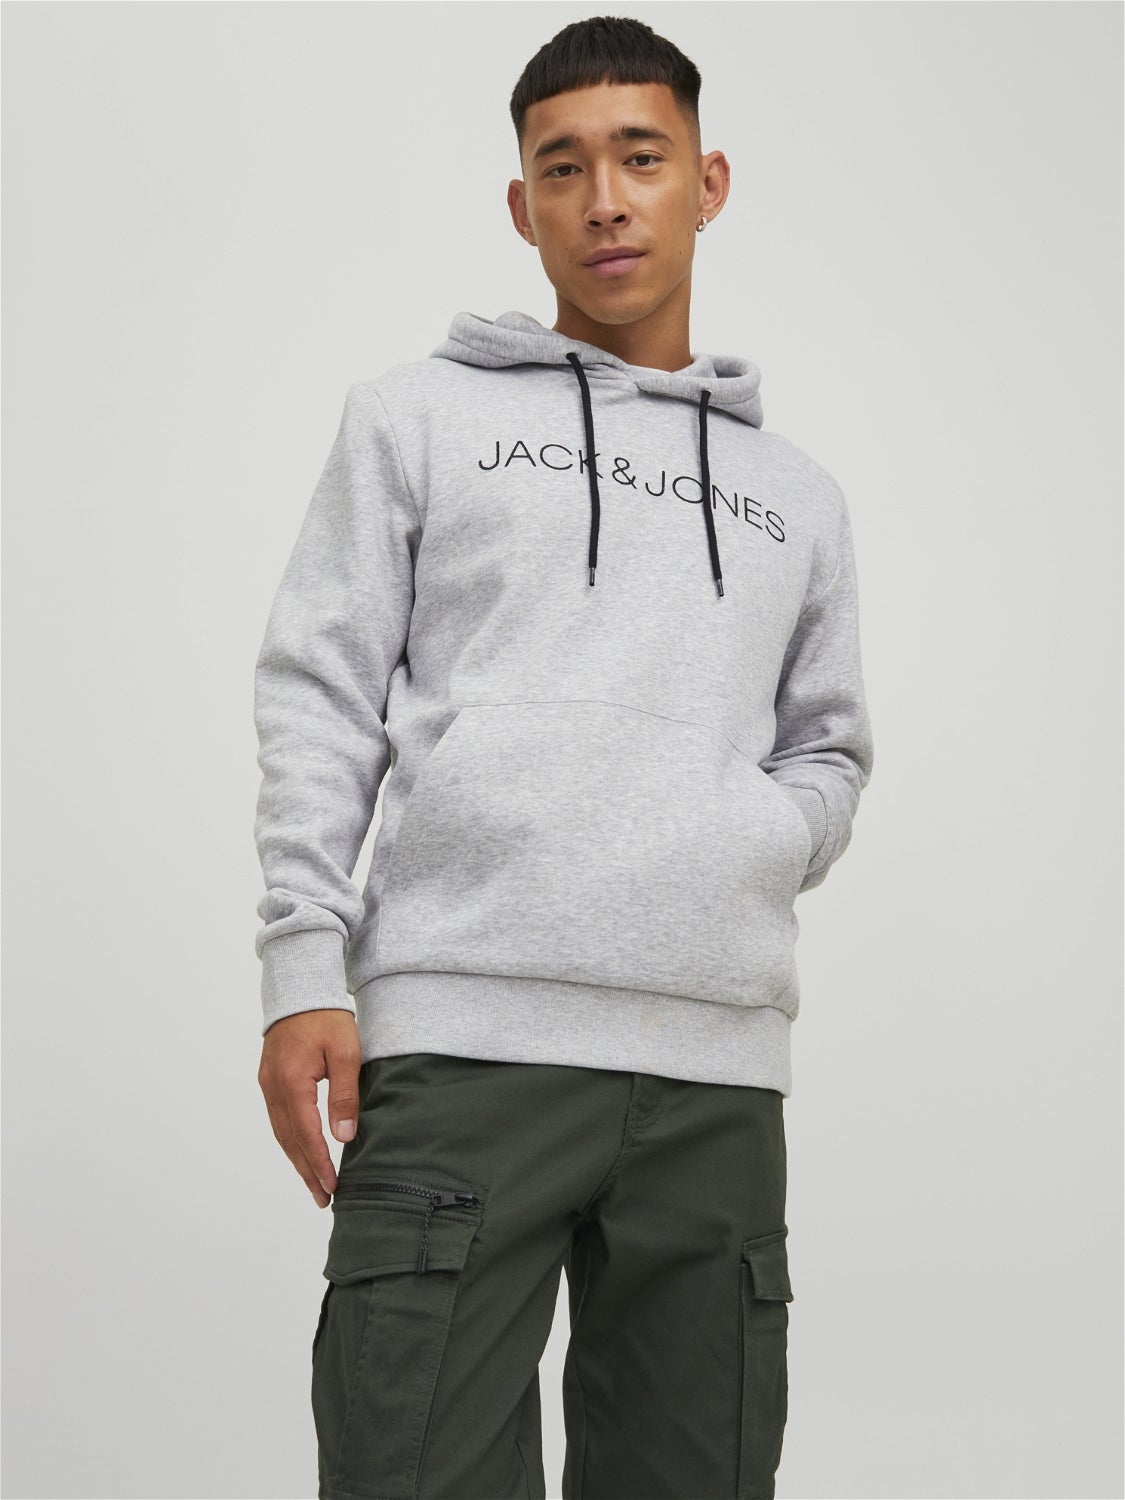 Grün L HERREN Pullovers & Sweatshirts Basisch Jack & Jones sweatshirt Rabatt 57 % 